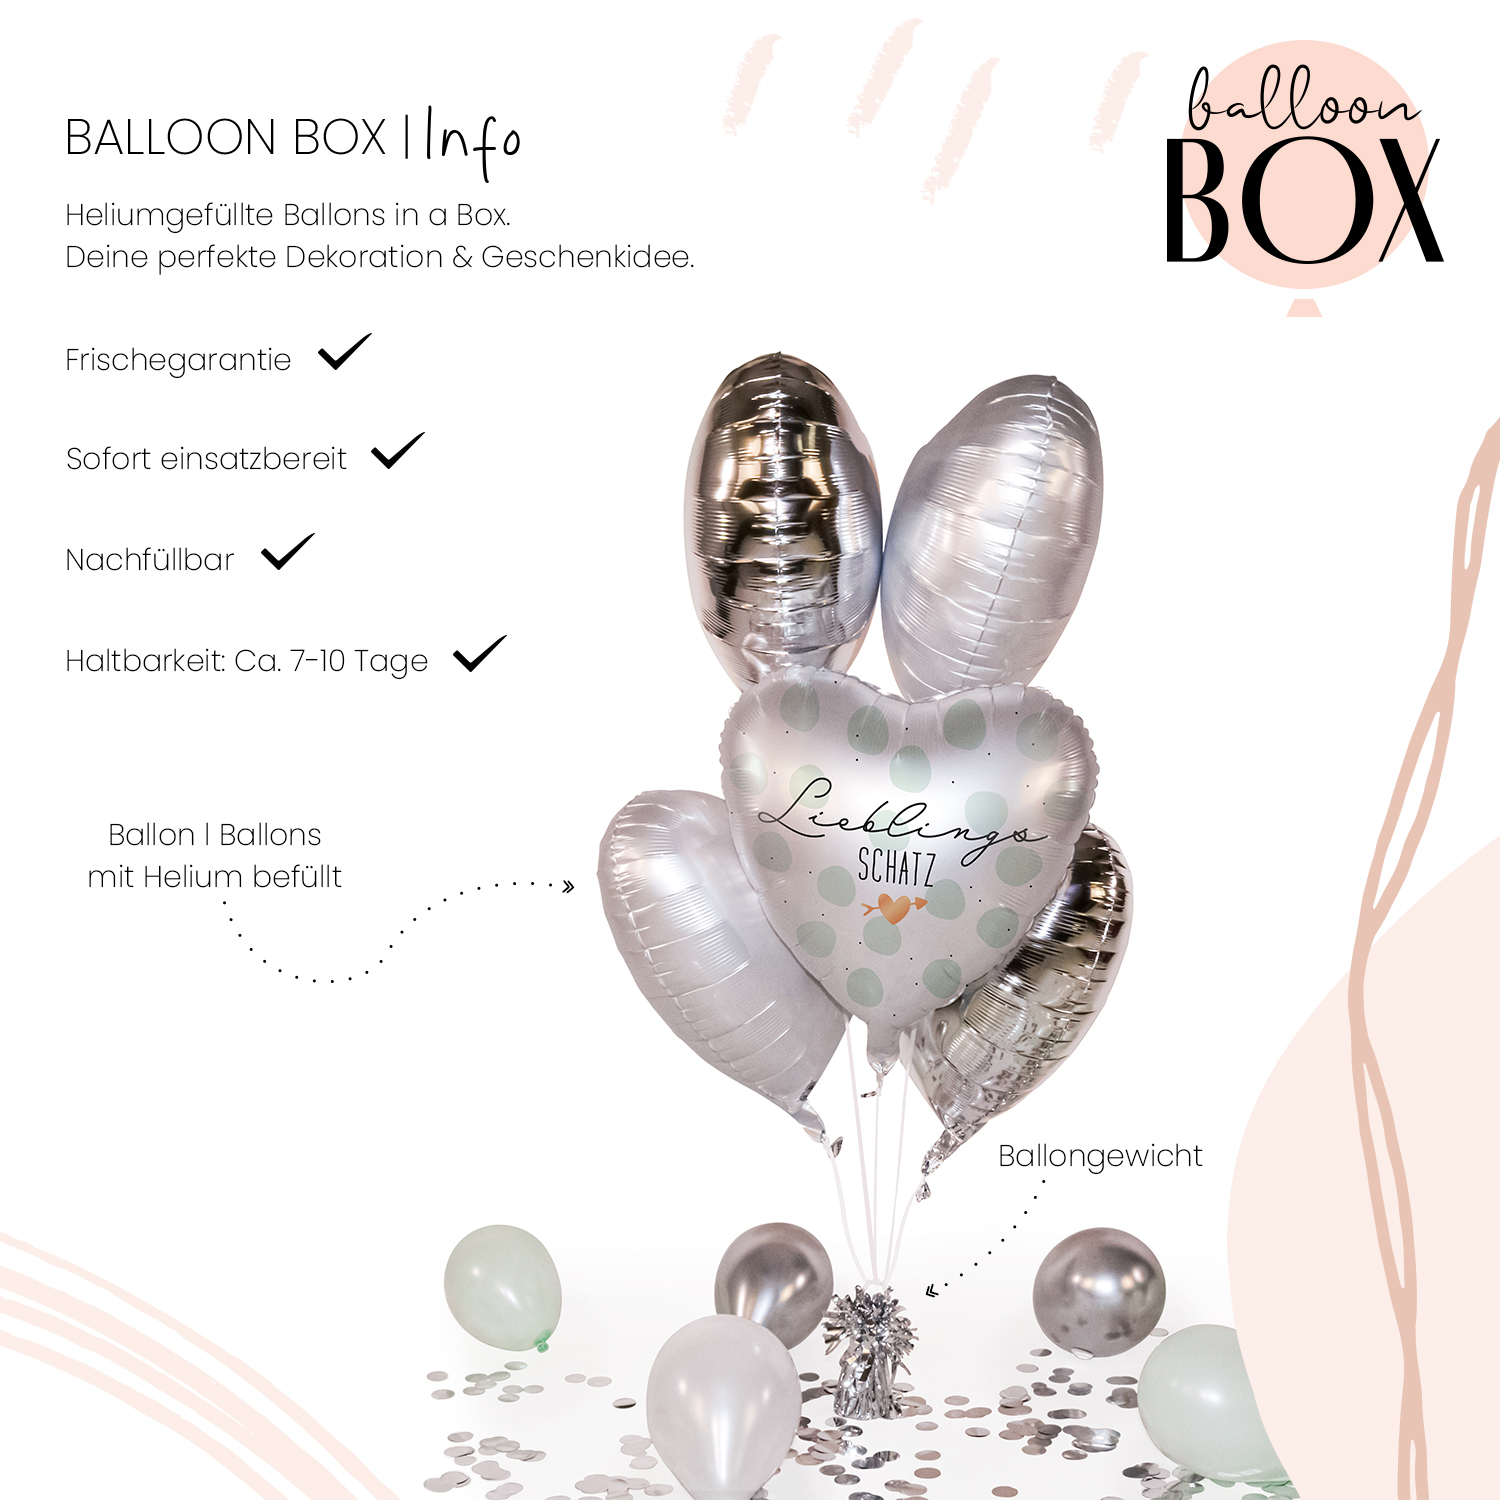 Heliumballon in a Box - Lieblingsschatz